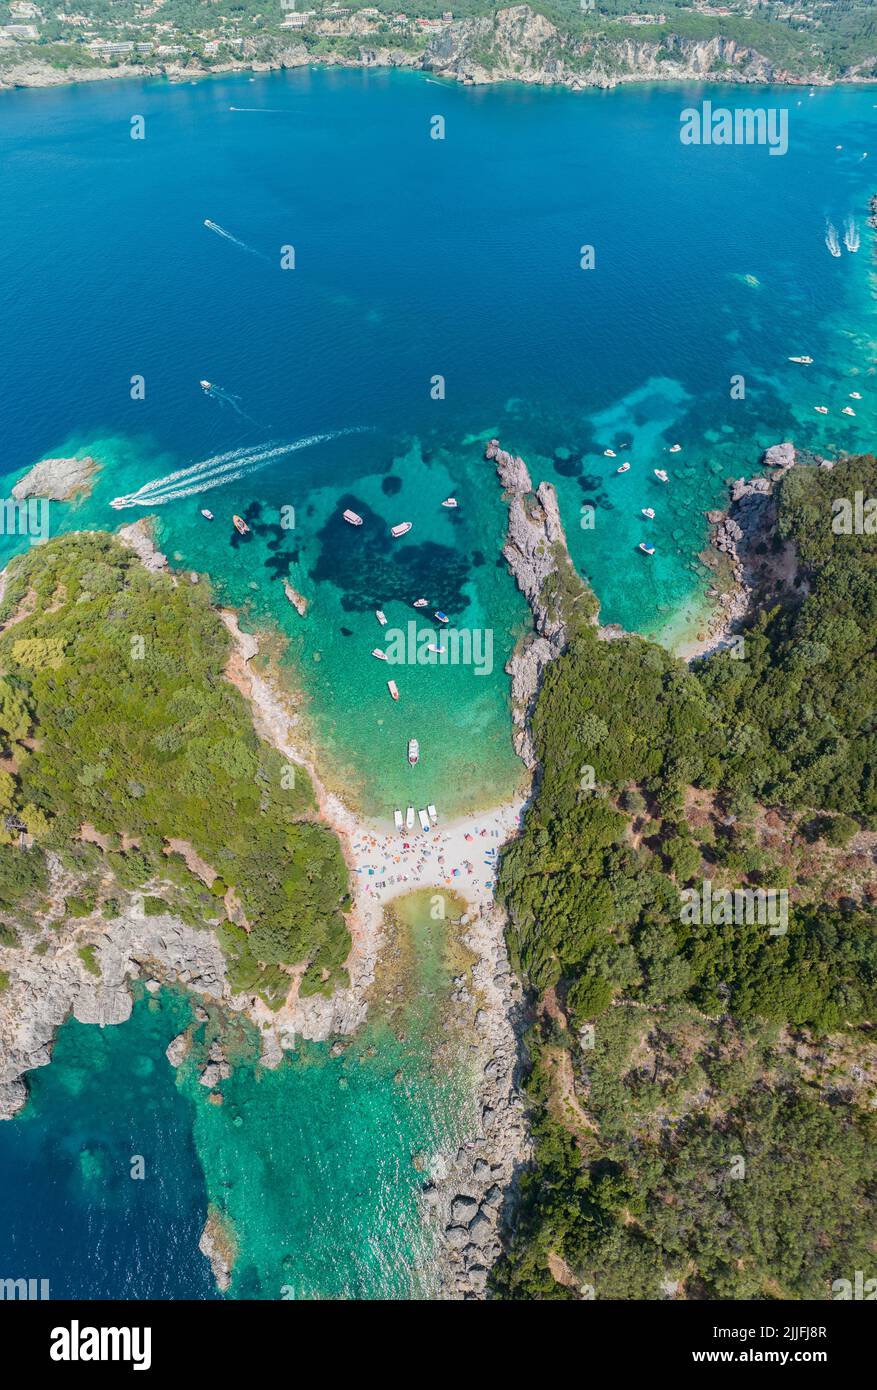 Vista aerea di Limni Beach Glyko, sull'isola di Corfù. Grecia. Dove le due spiagge sono collegate alla terraferma fornendo un paesaggio meraviglioso Foto Stock